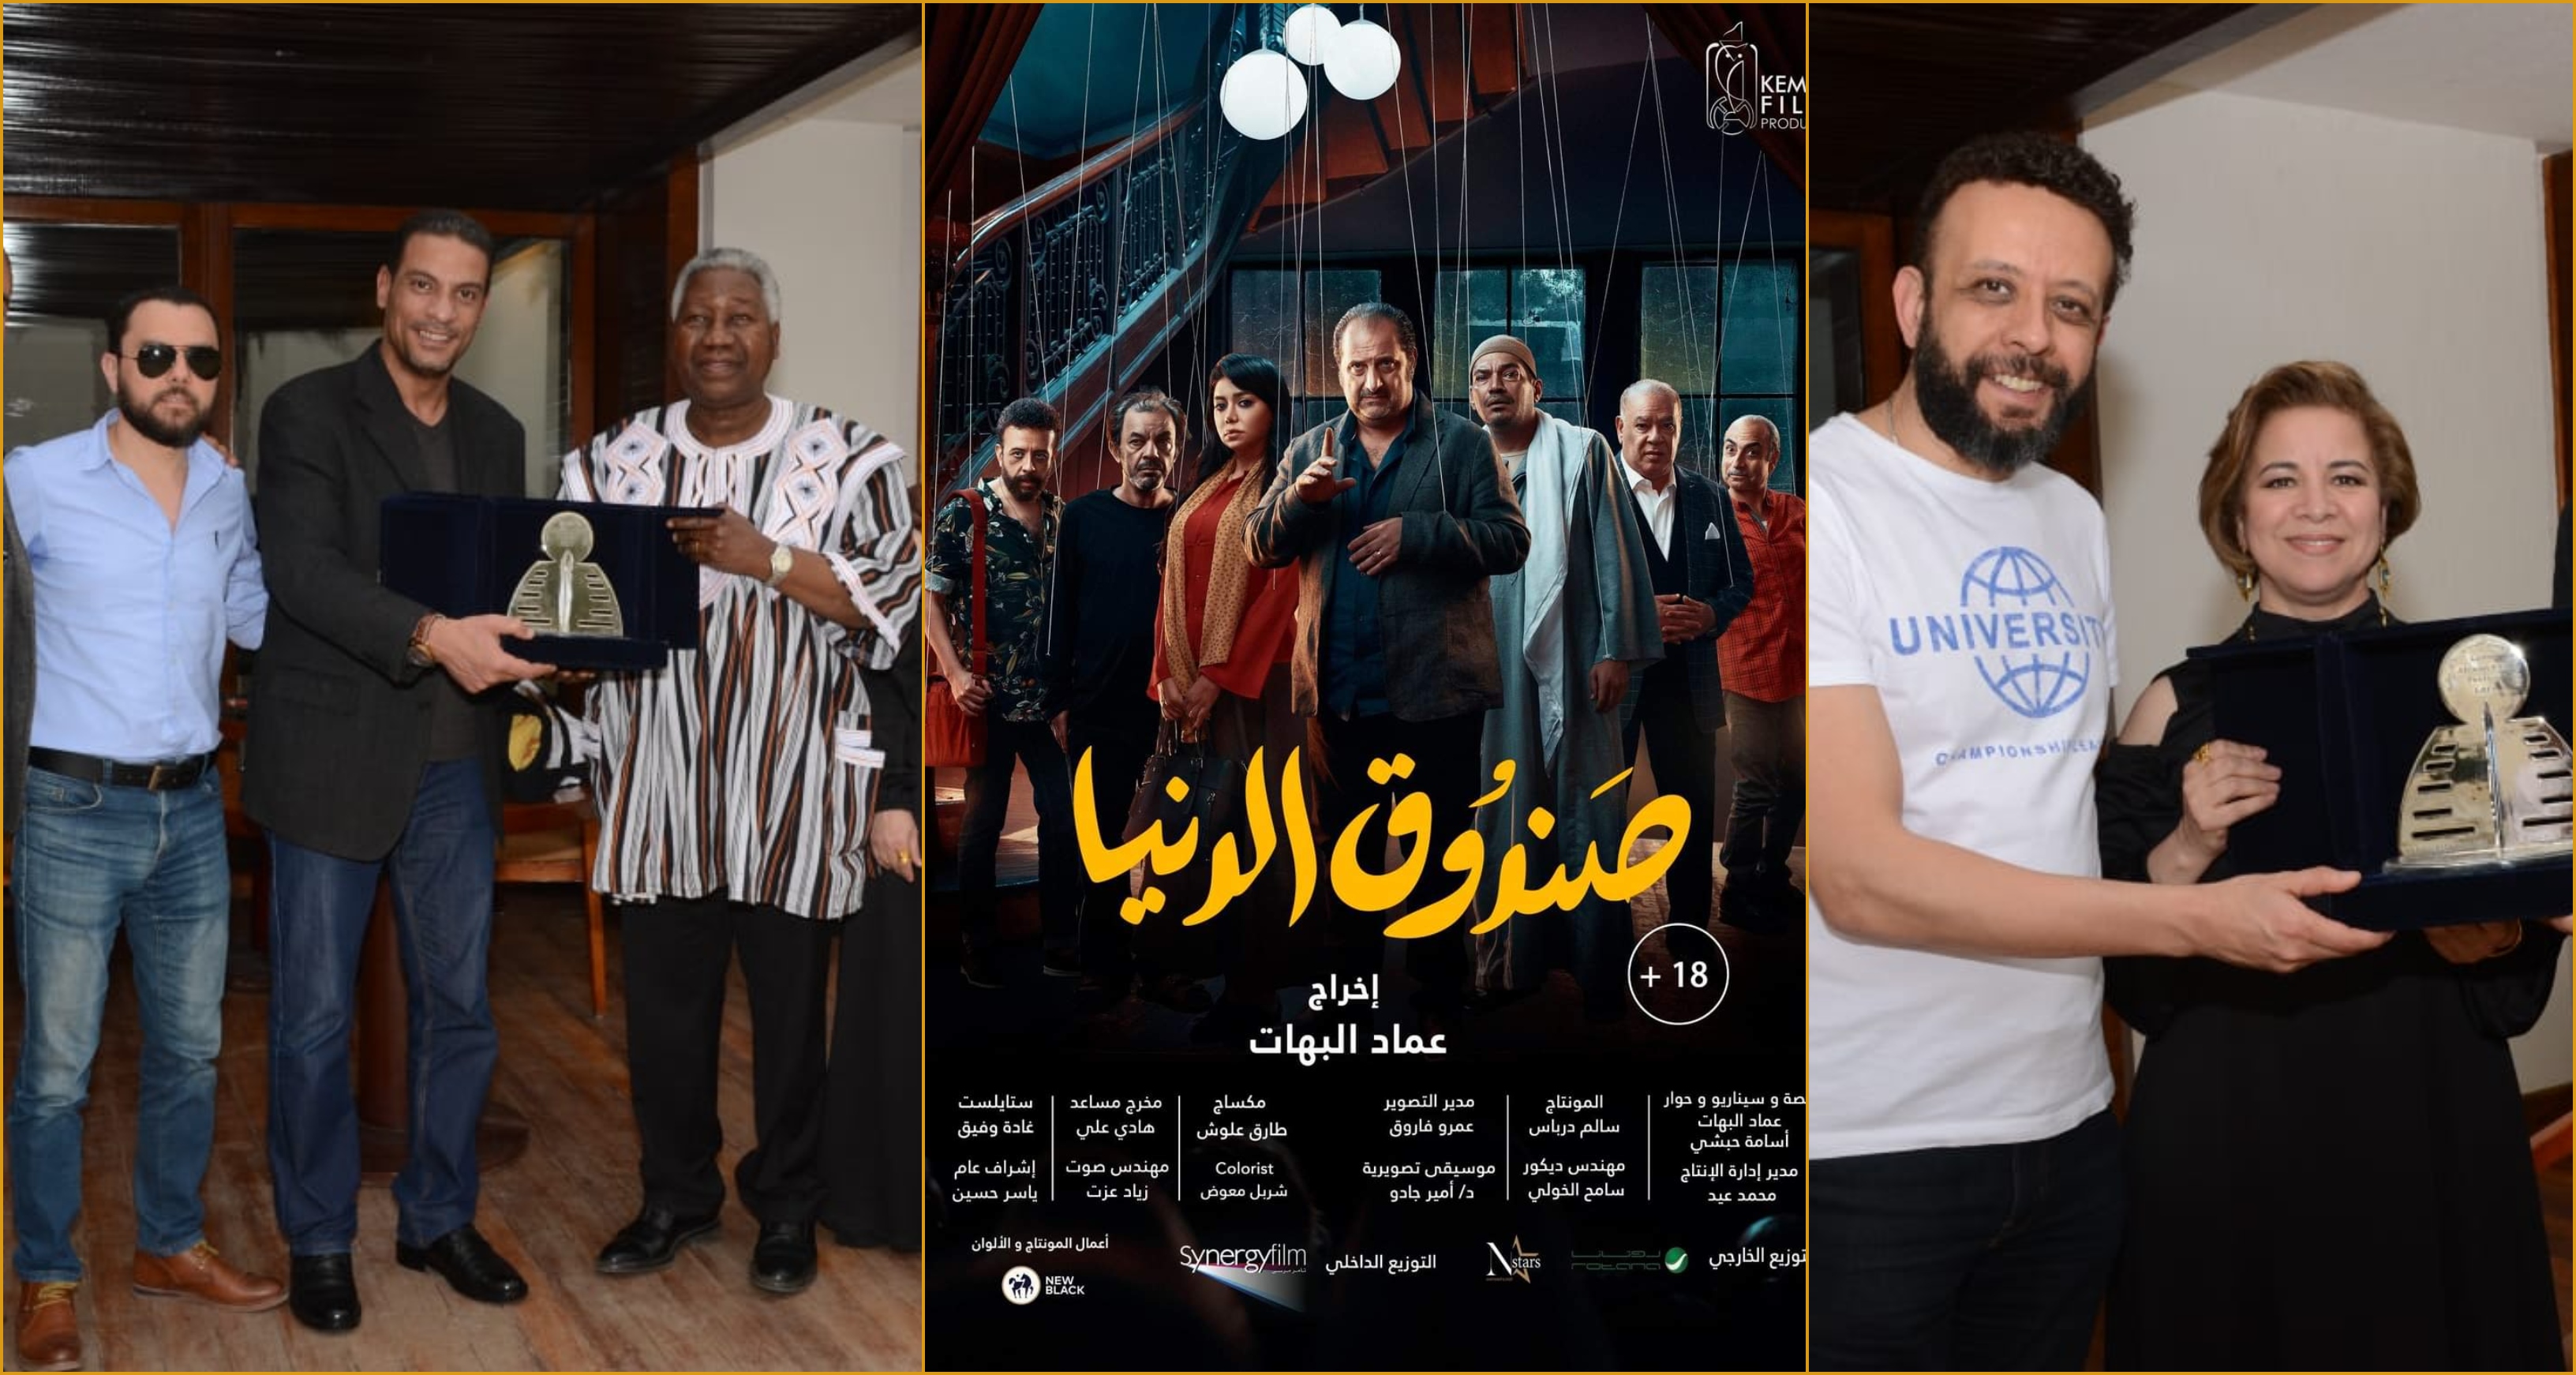 الفيلم حصل علي جائزة مهرجان الأقصر للسينما الافريقية في دورته التاسعة ويعقب عرضه ندوة يديرها الناقد رامي عبدالرازق